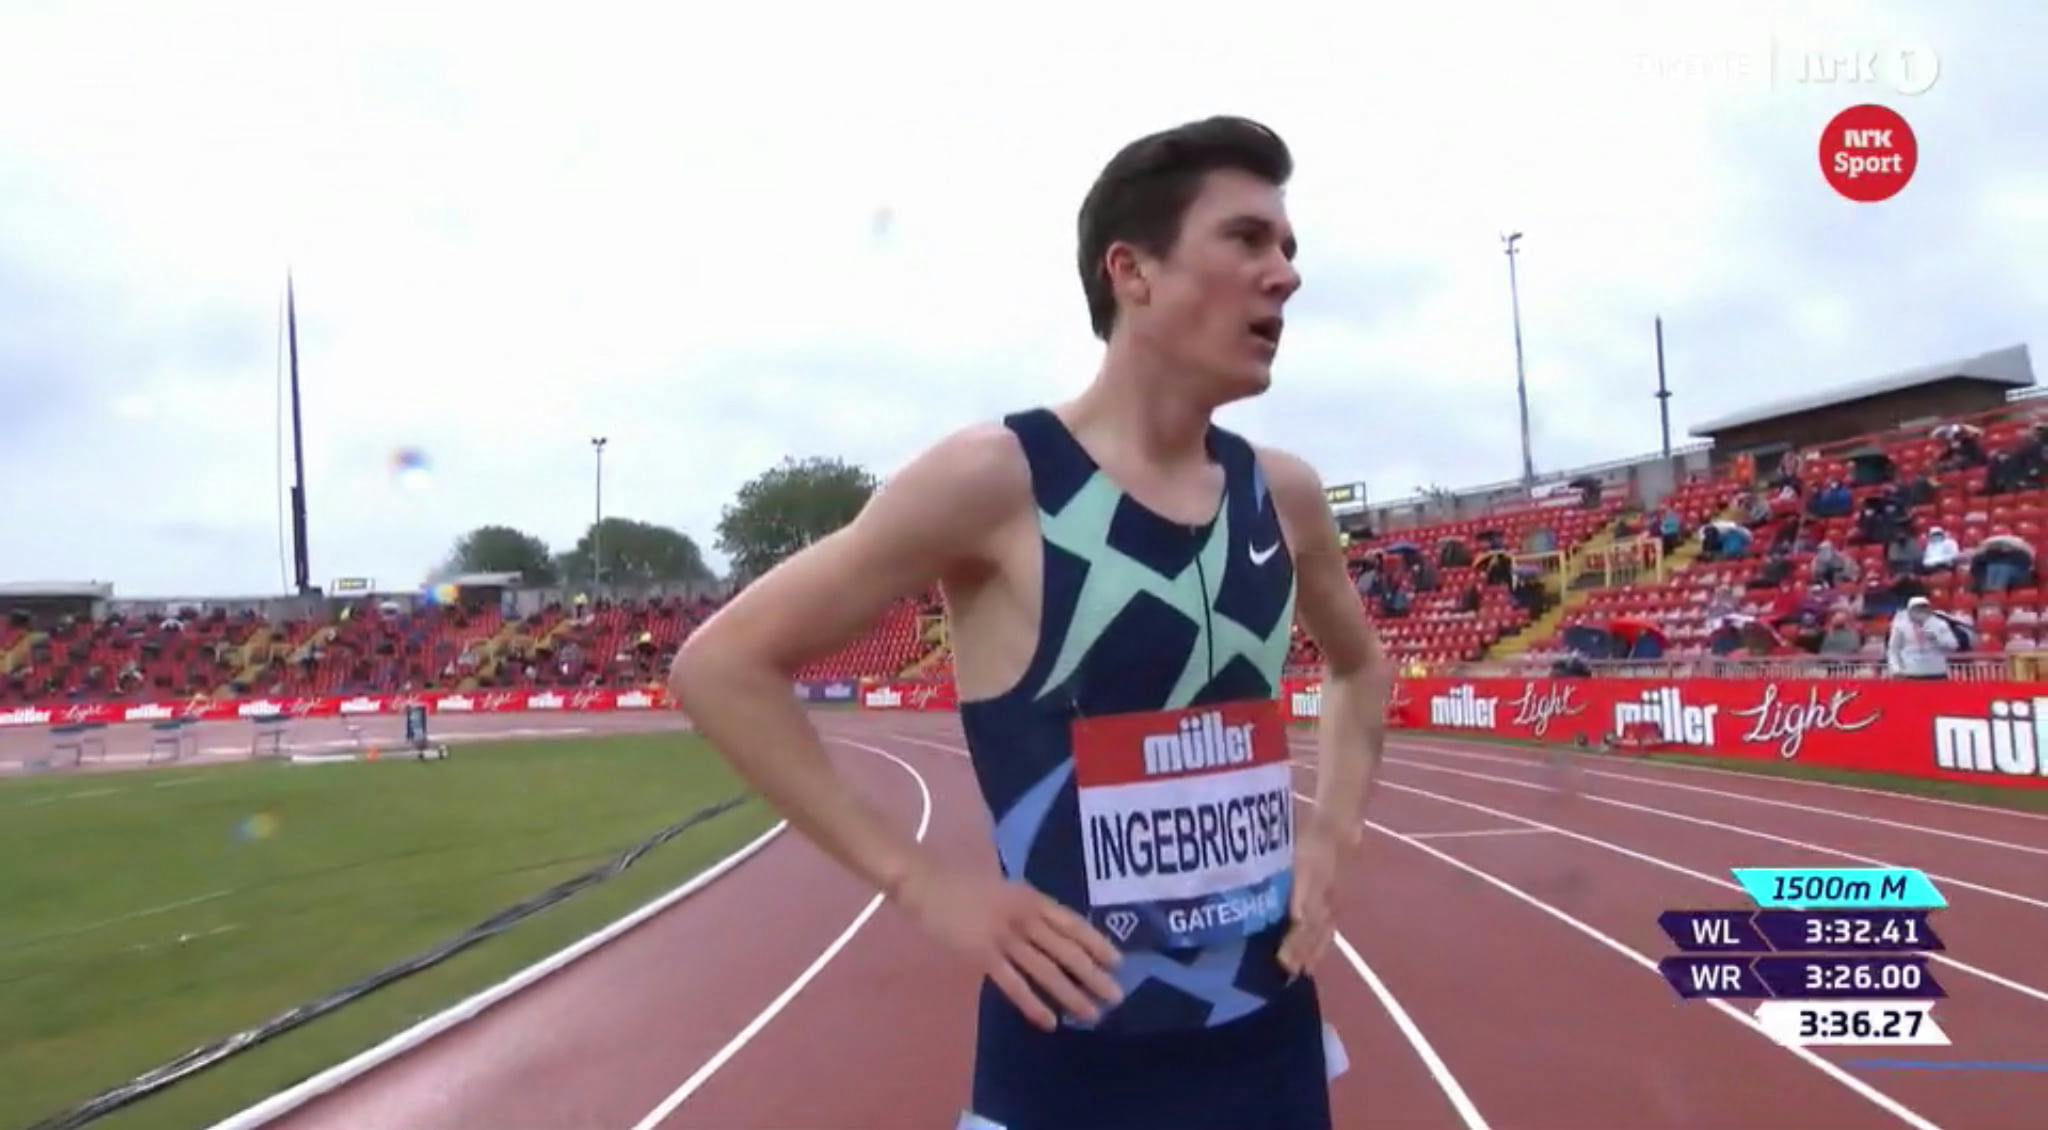 Νικητής ο Jakob Ingebrigtsen με χρόνο 3:36.27 στην κούρσα των 1.500 μέτρων στο Diamond League στο Gateshead